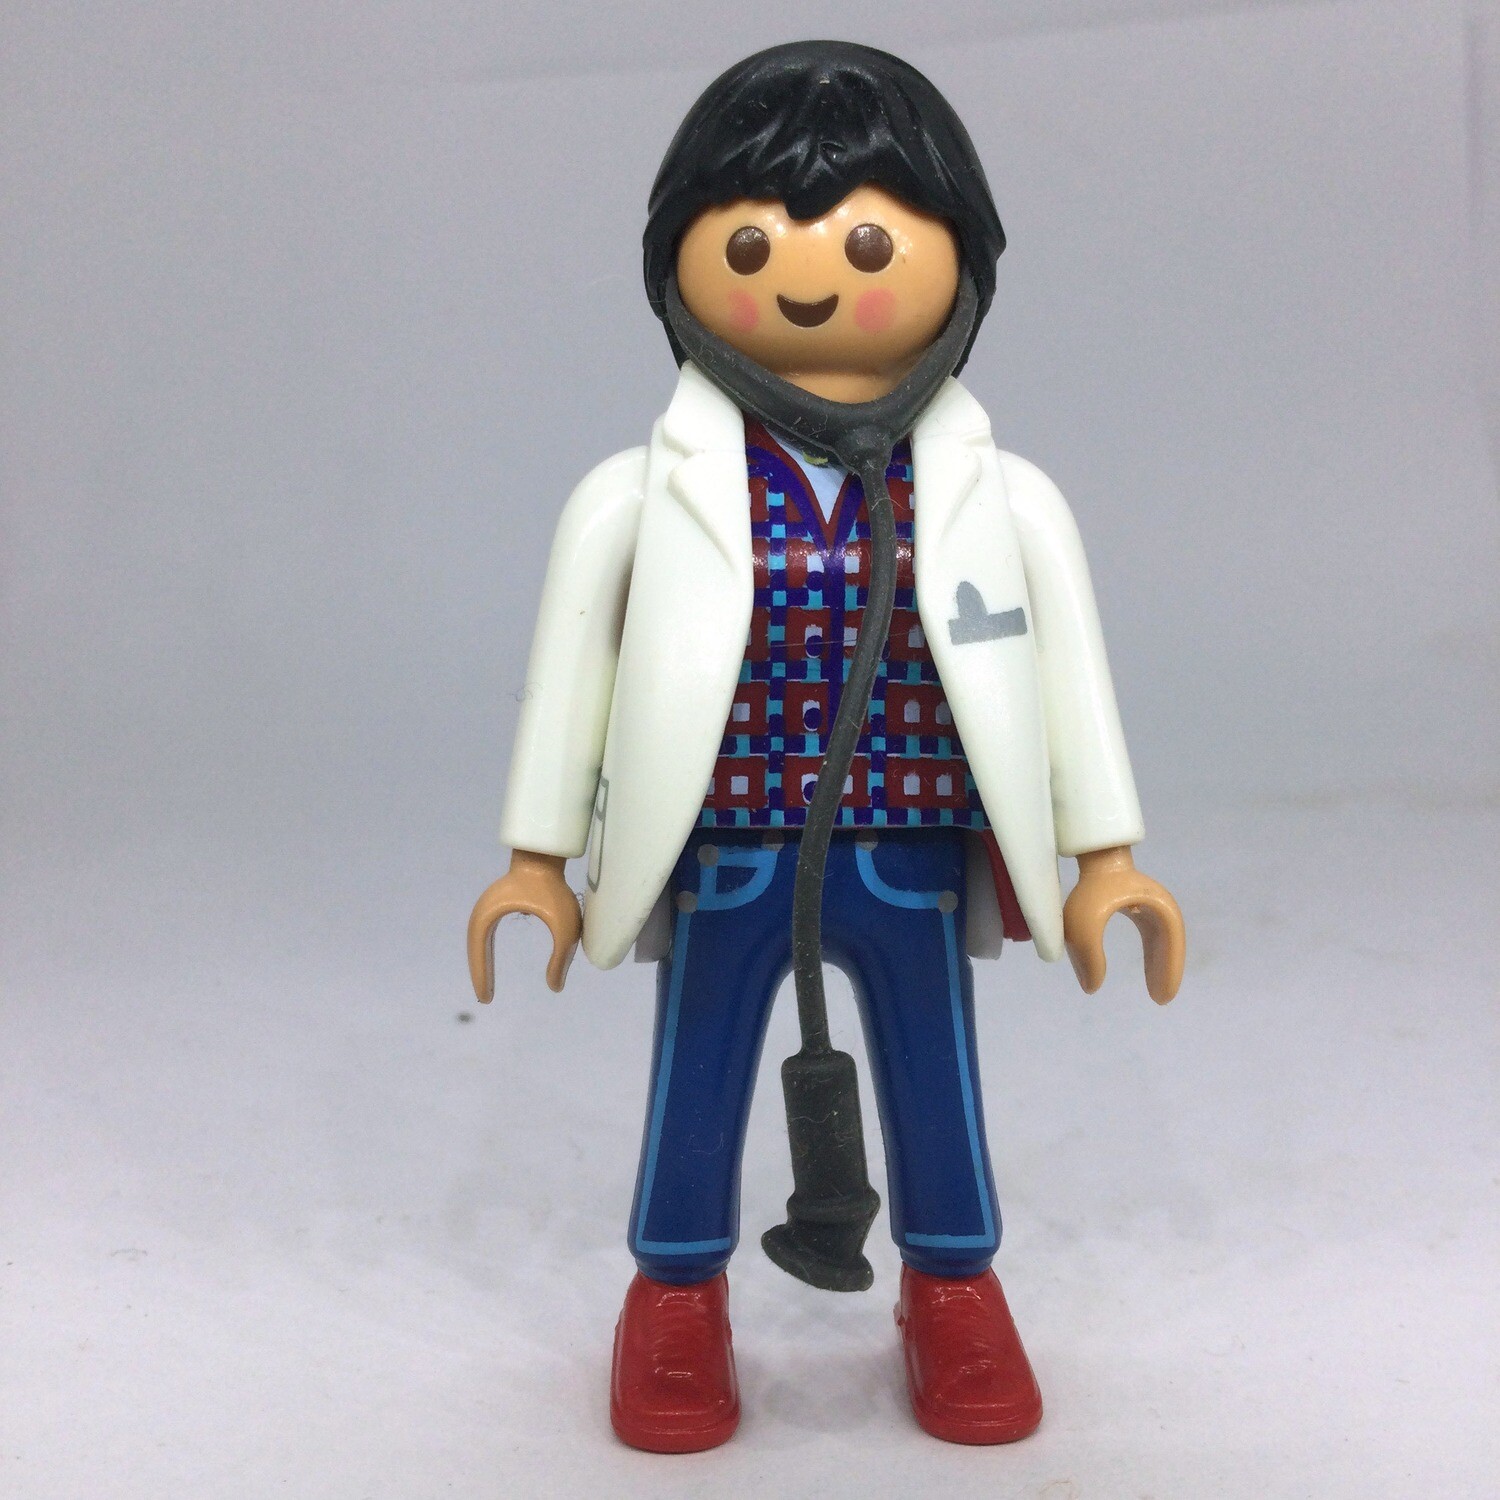 Figurine docteur homme